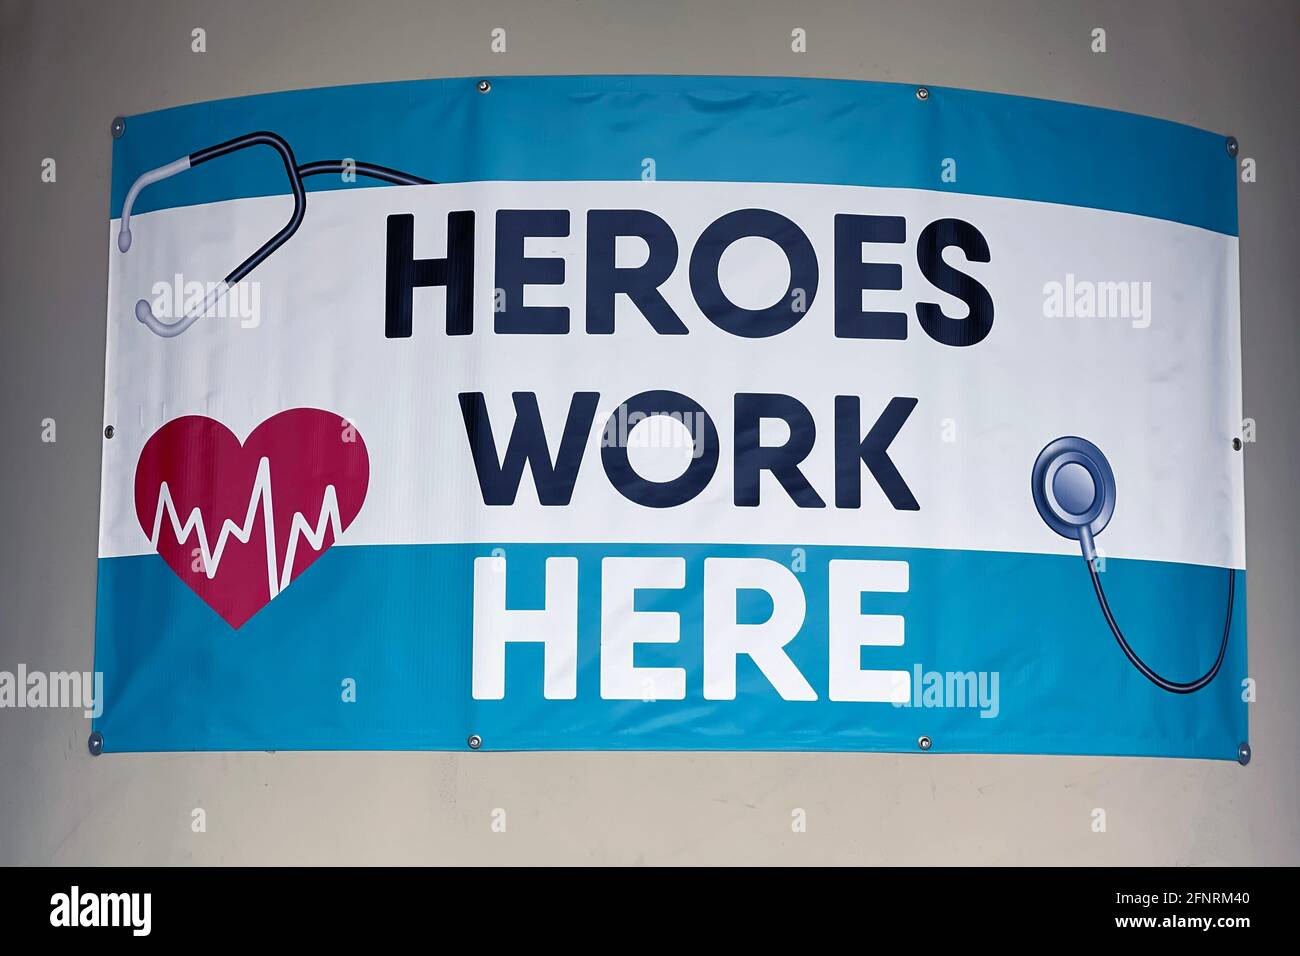 Am Montag, den 17. Mai 2021, in Montebello, ein Schild der Heldenarbeit hier im Reliant Urgent Care Center, Kalif. Stockfoto